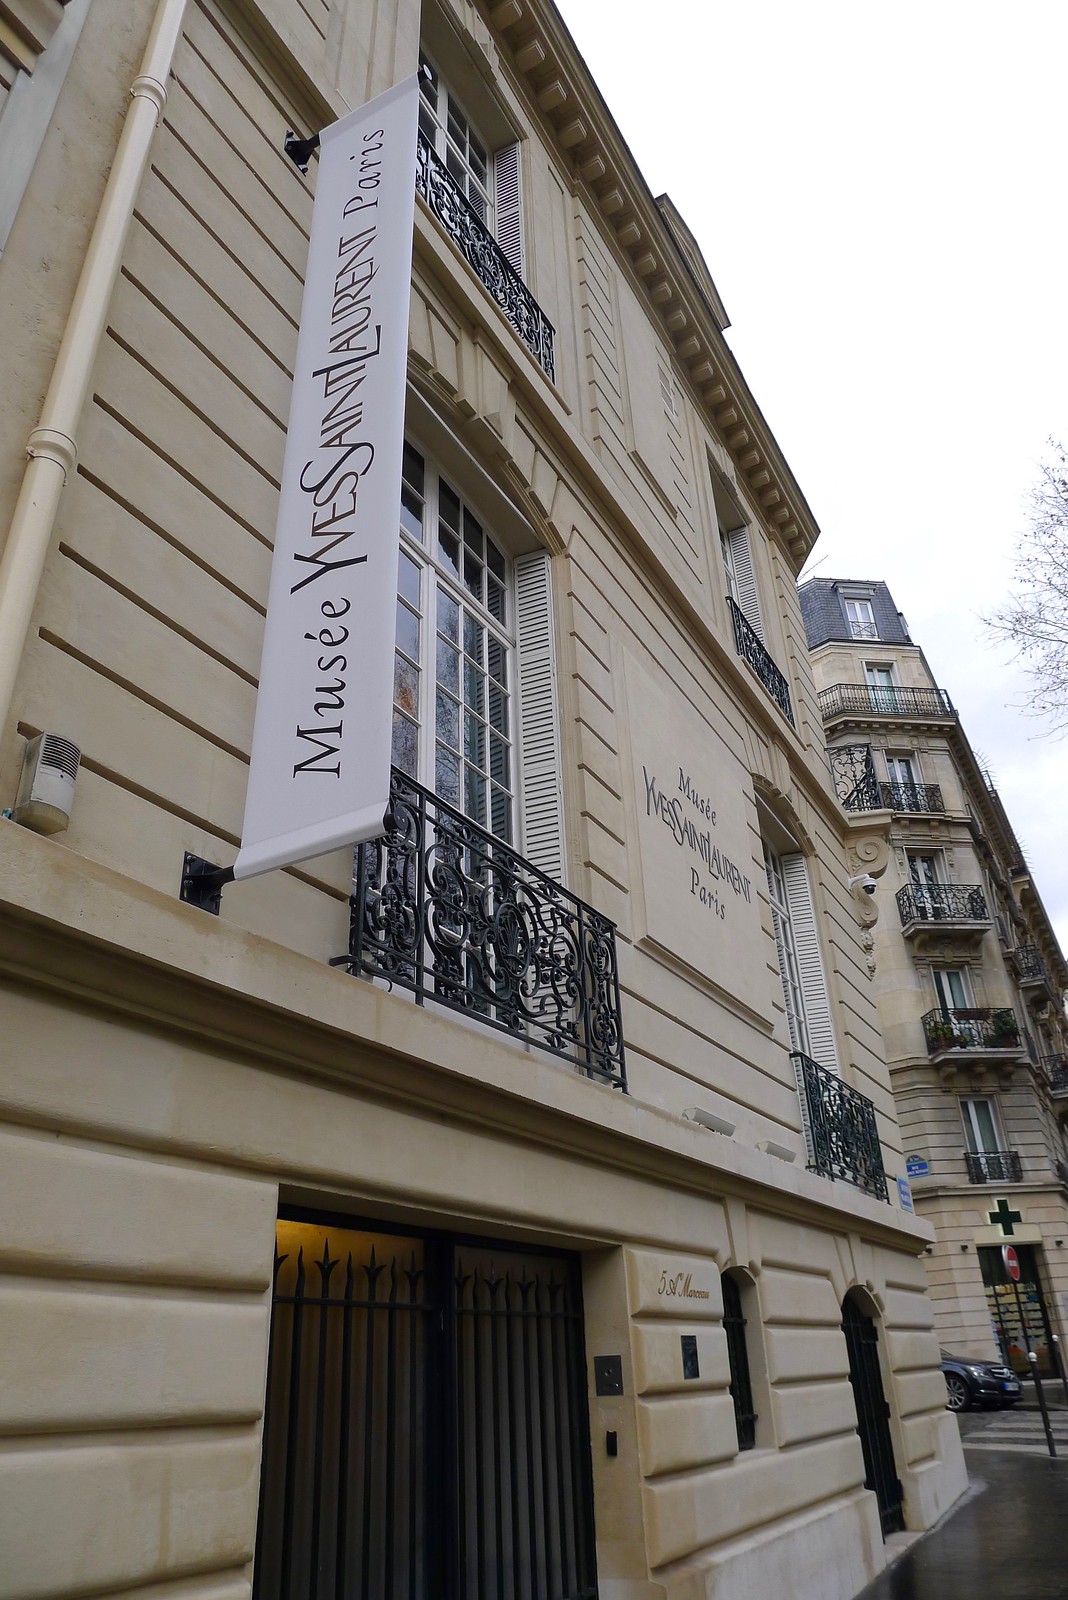 Musée Yves Saint Laurent, Paris